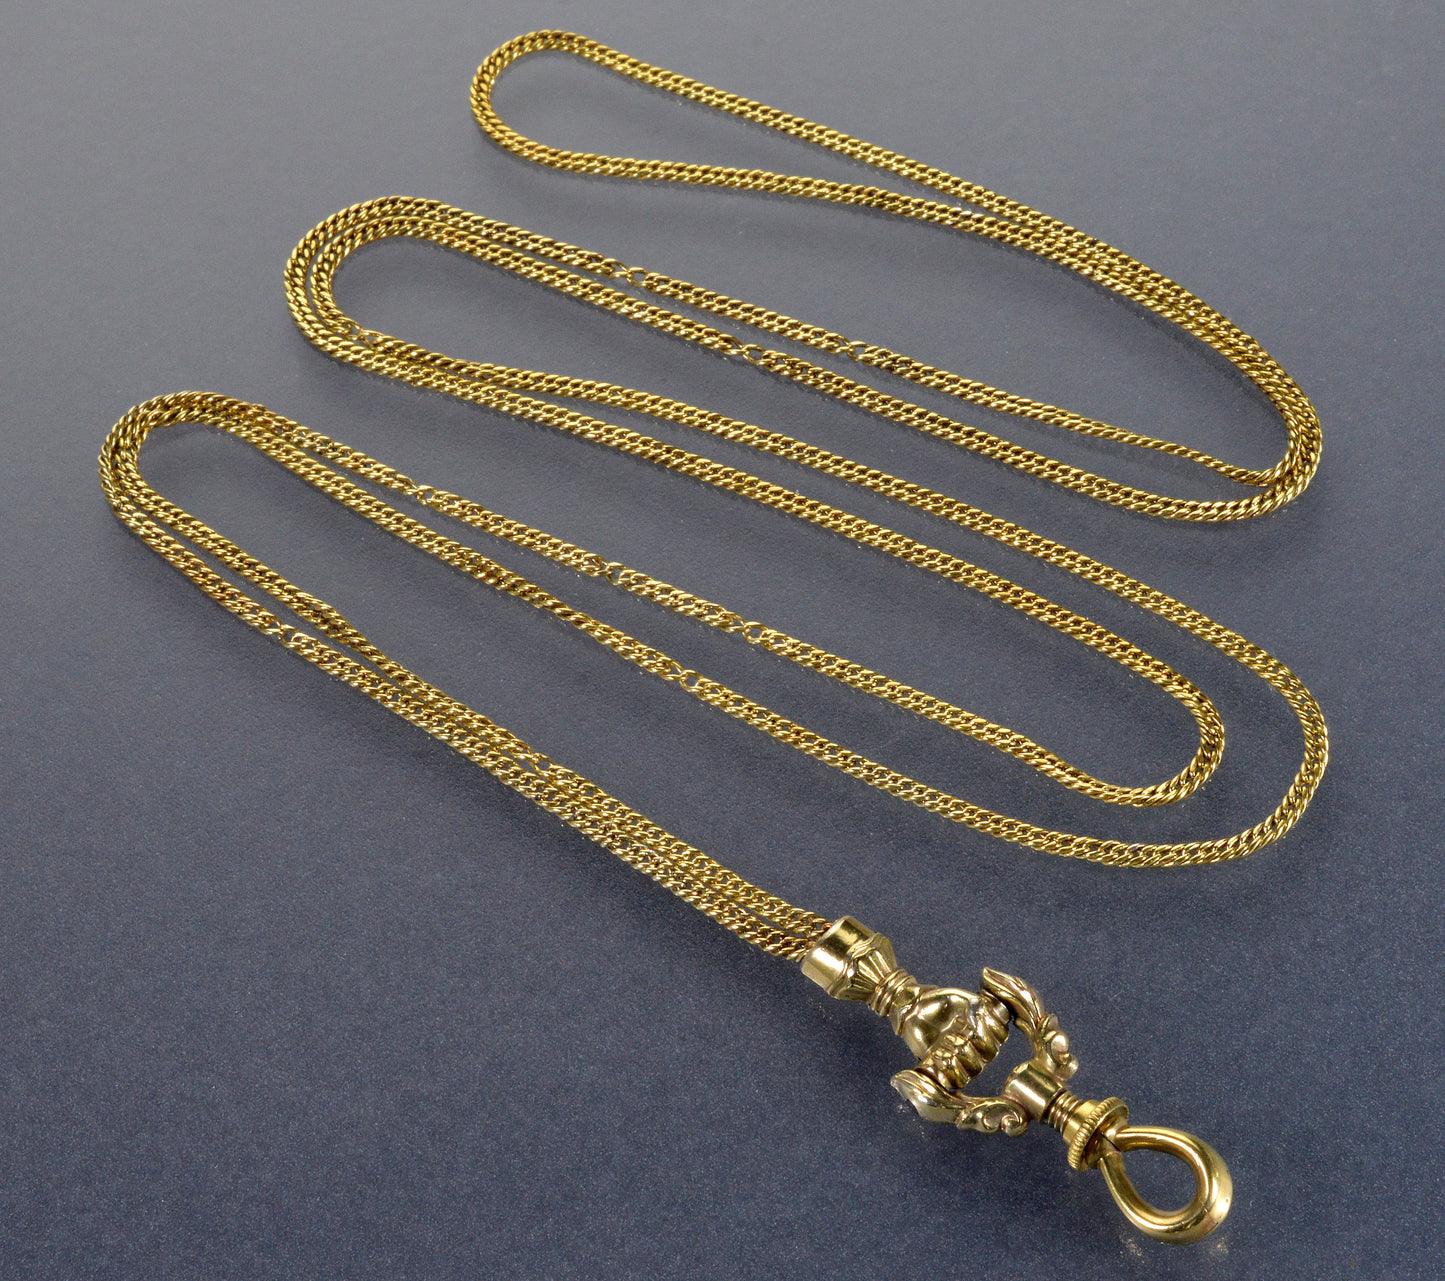 Antique Georgian 10K Gold Necklace Hand Fist Longuard Chain C.1820 003709